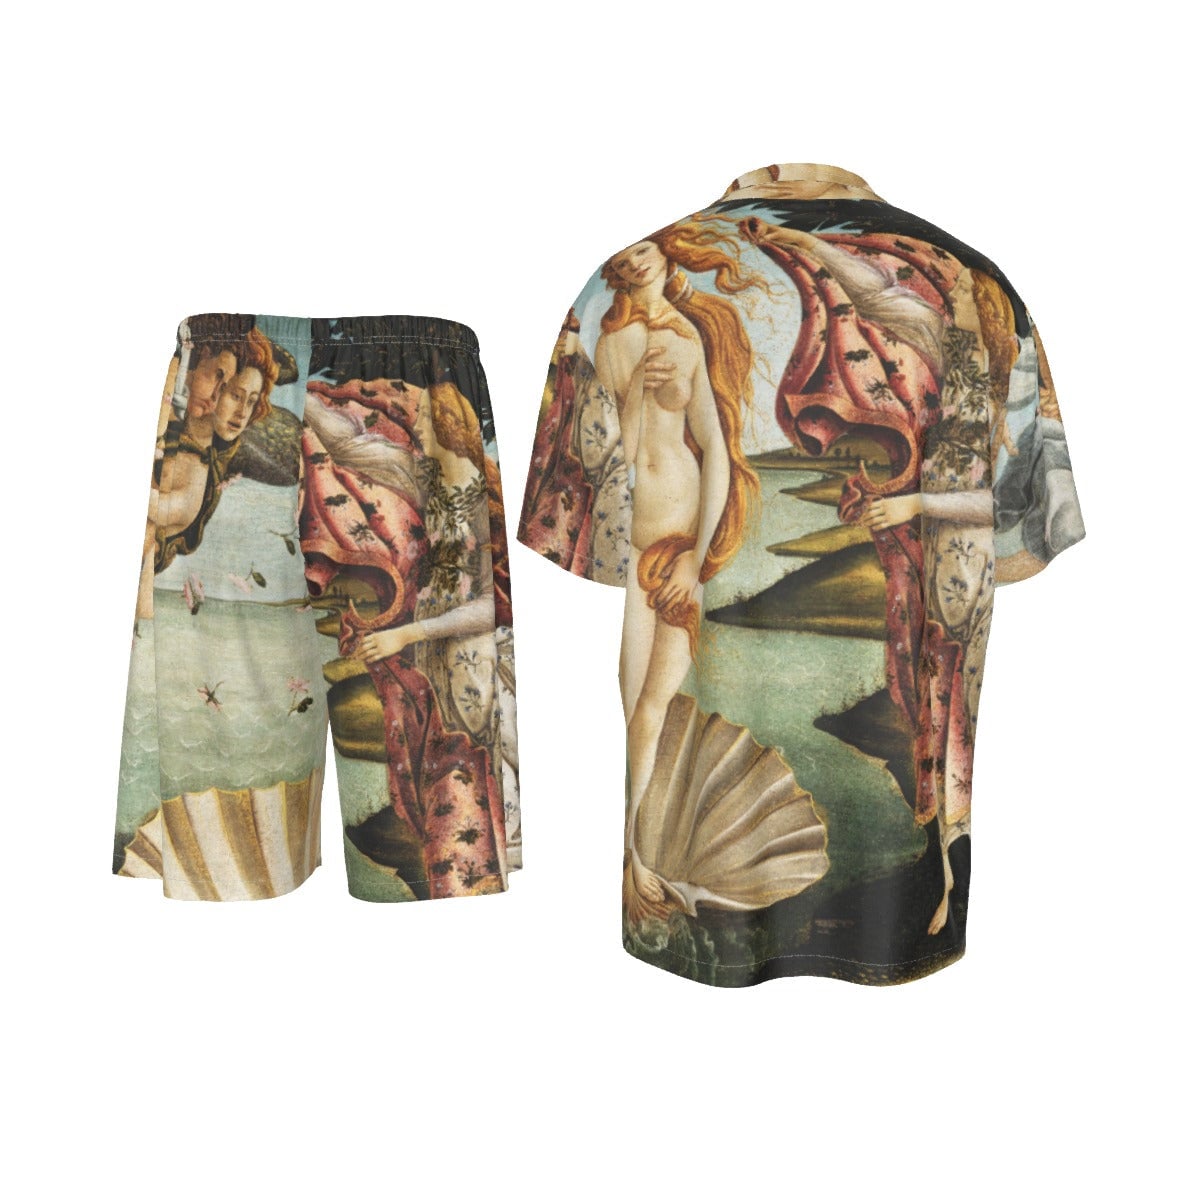 Σετ κοστούμι πουκάμισου ζωγραφικής The Birth of Venus Sandro Botticelli